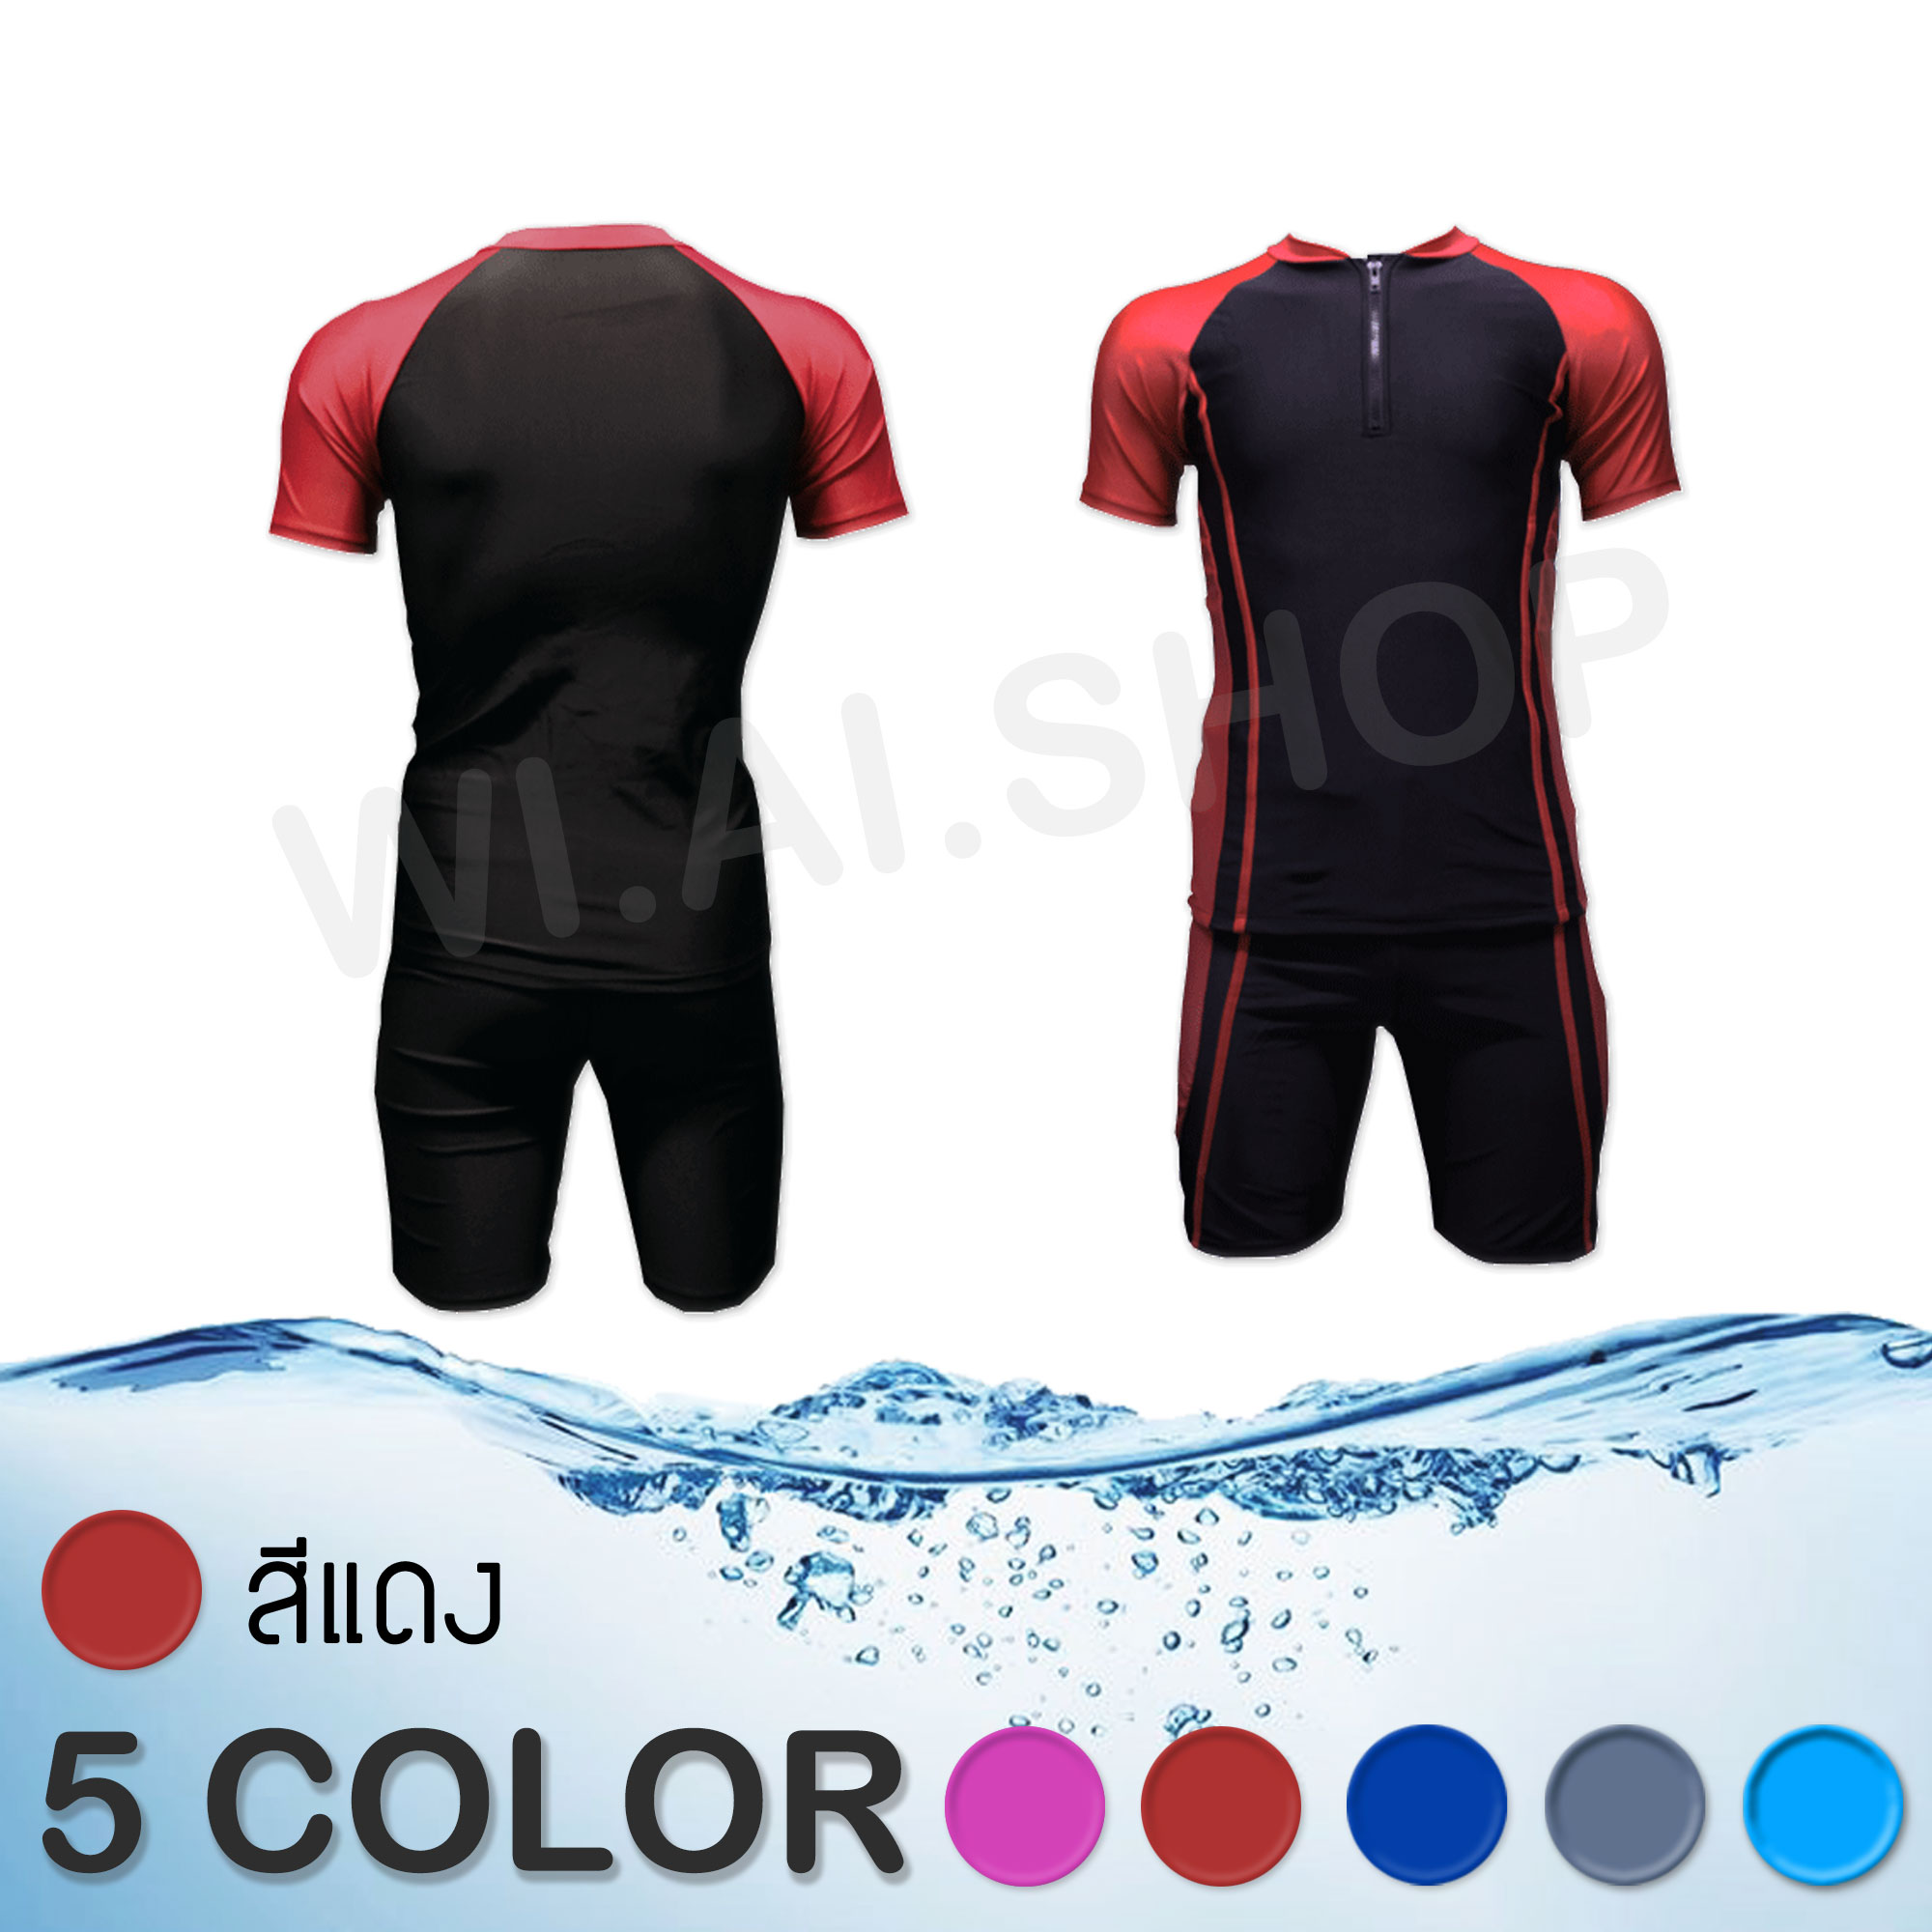 ชุดว่ายน้ำ ชุดว่ายน้ำแขนสั้น ขาสั้น ชุดว่ายน้ำหญิง ชาย ทอม สีดำ ซิปหน้า แยกชิ้น เสื้อ กางเกง สินค้าพร้อมส่งด่วน ขนาด S M L XL M041